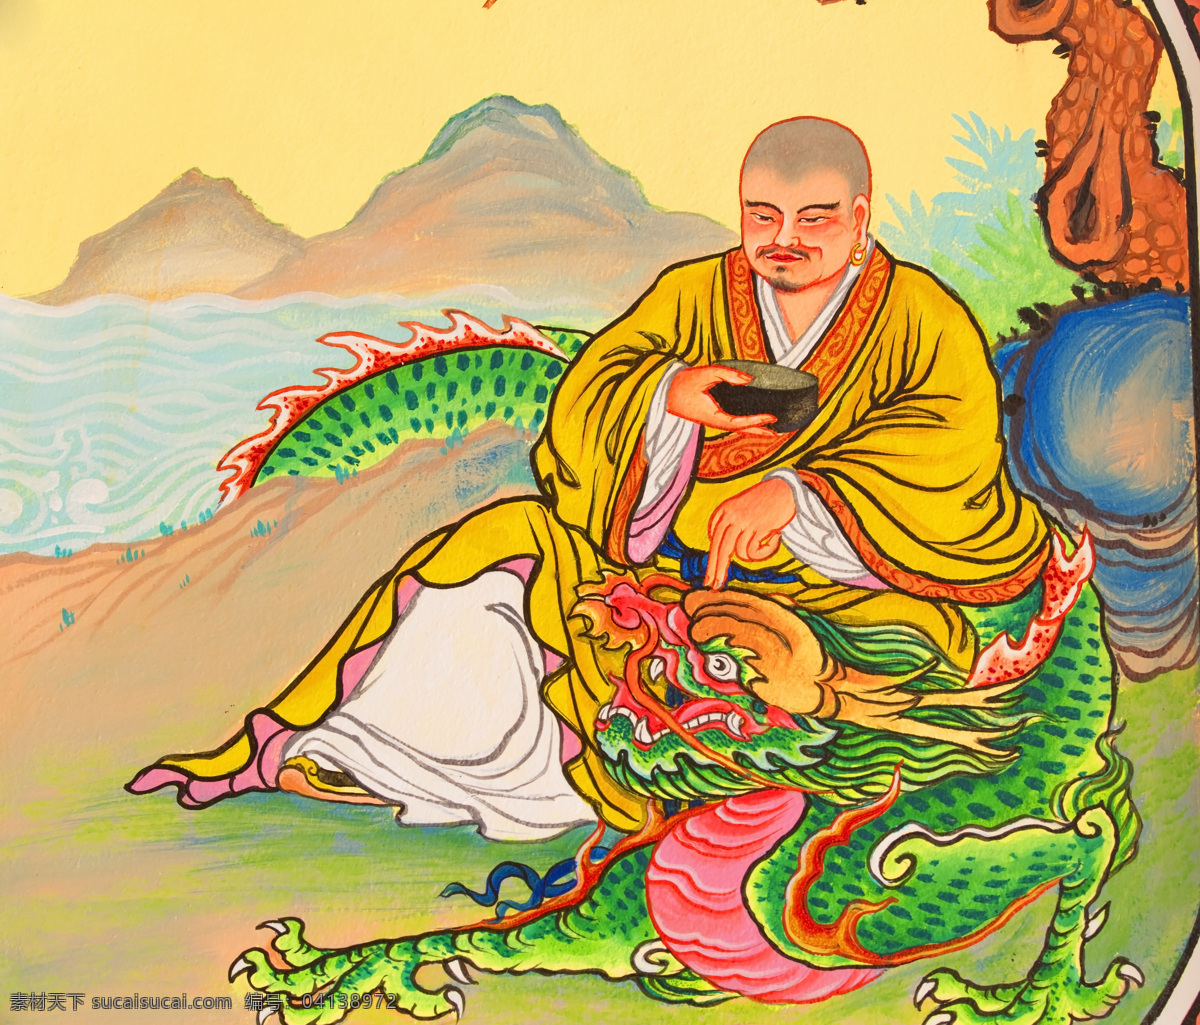 中国佛教壁画 文化 艺术 佛教 佛祖 菩萨 壁画 中国风 祥云 青龙 宗教信仰 文化艺术 黄色